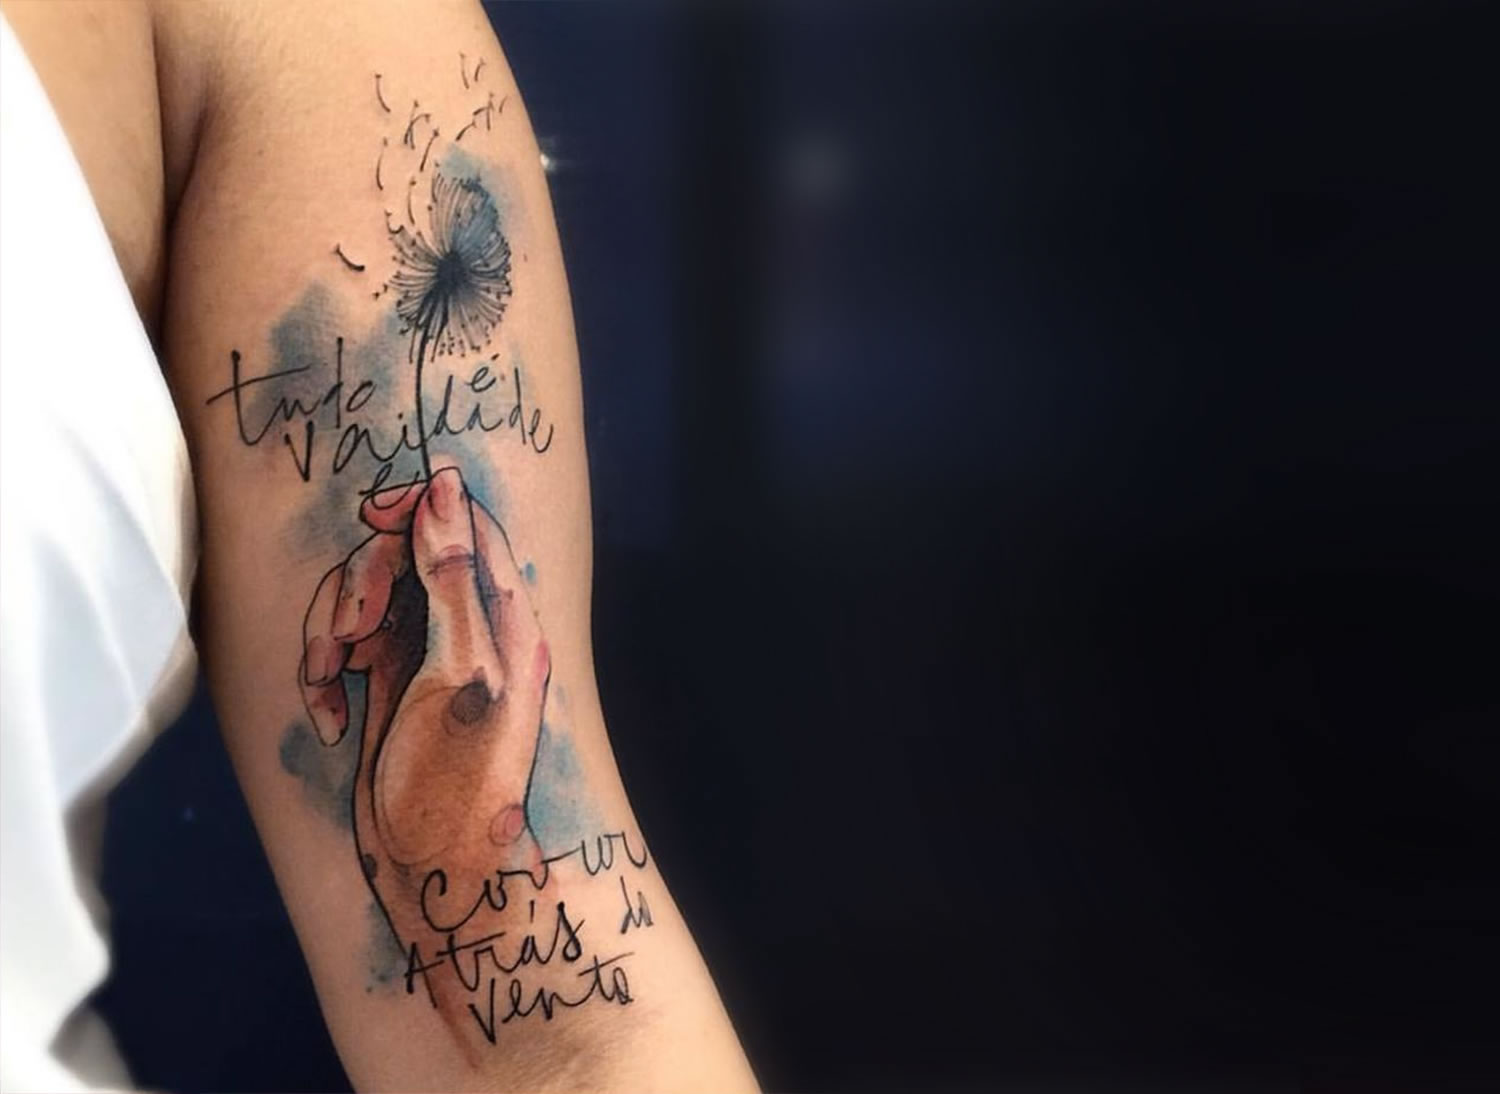 tudo é vaidade e corre atras do vento. collaborative tattoo by Victor Montaghini and fabio maca. hand holding a dandelion